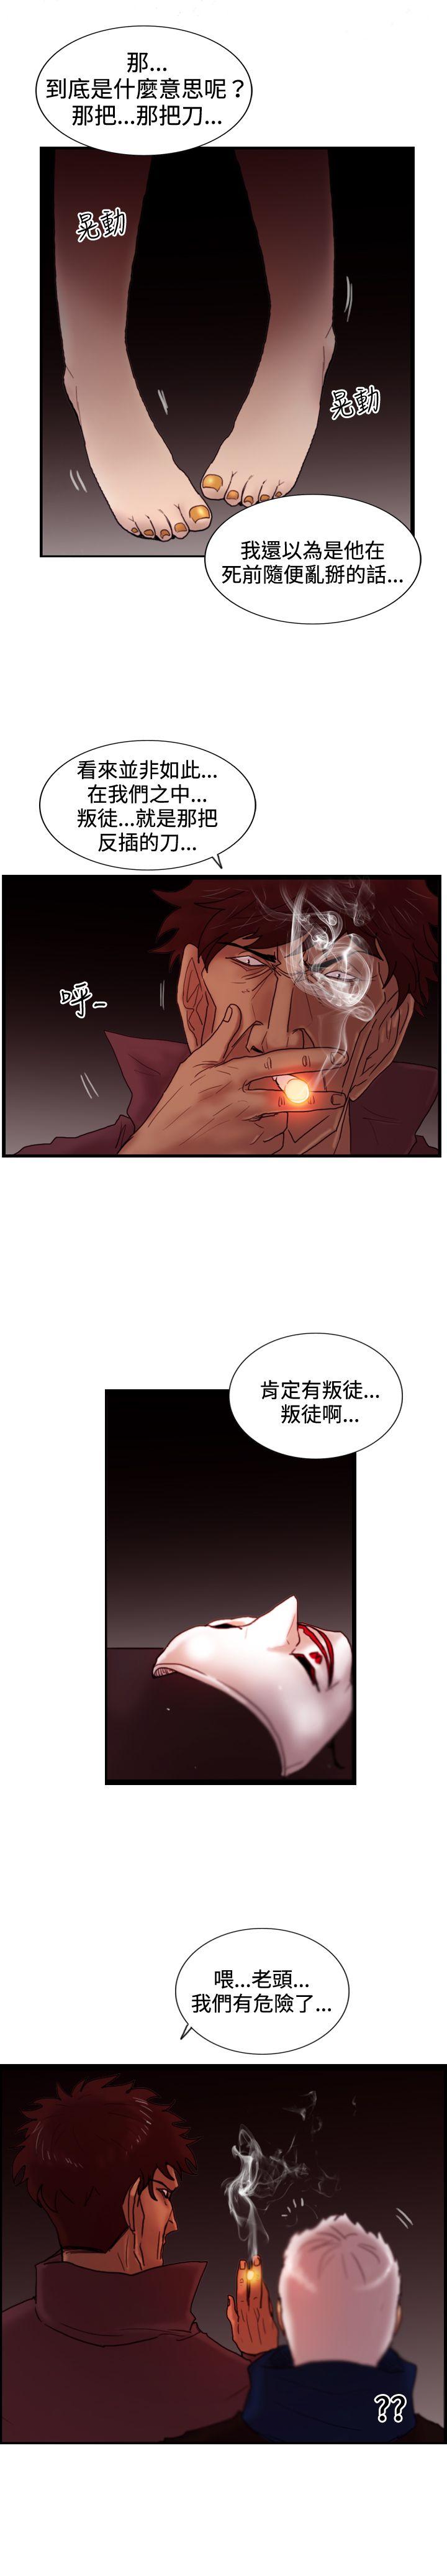 韩国污漫画 覺醒(完結) 第27话自杀社团 23